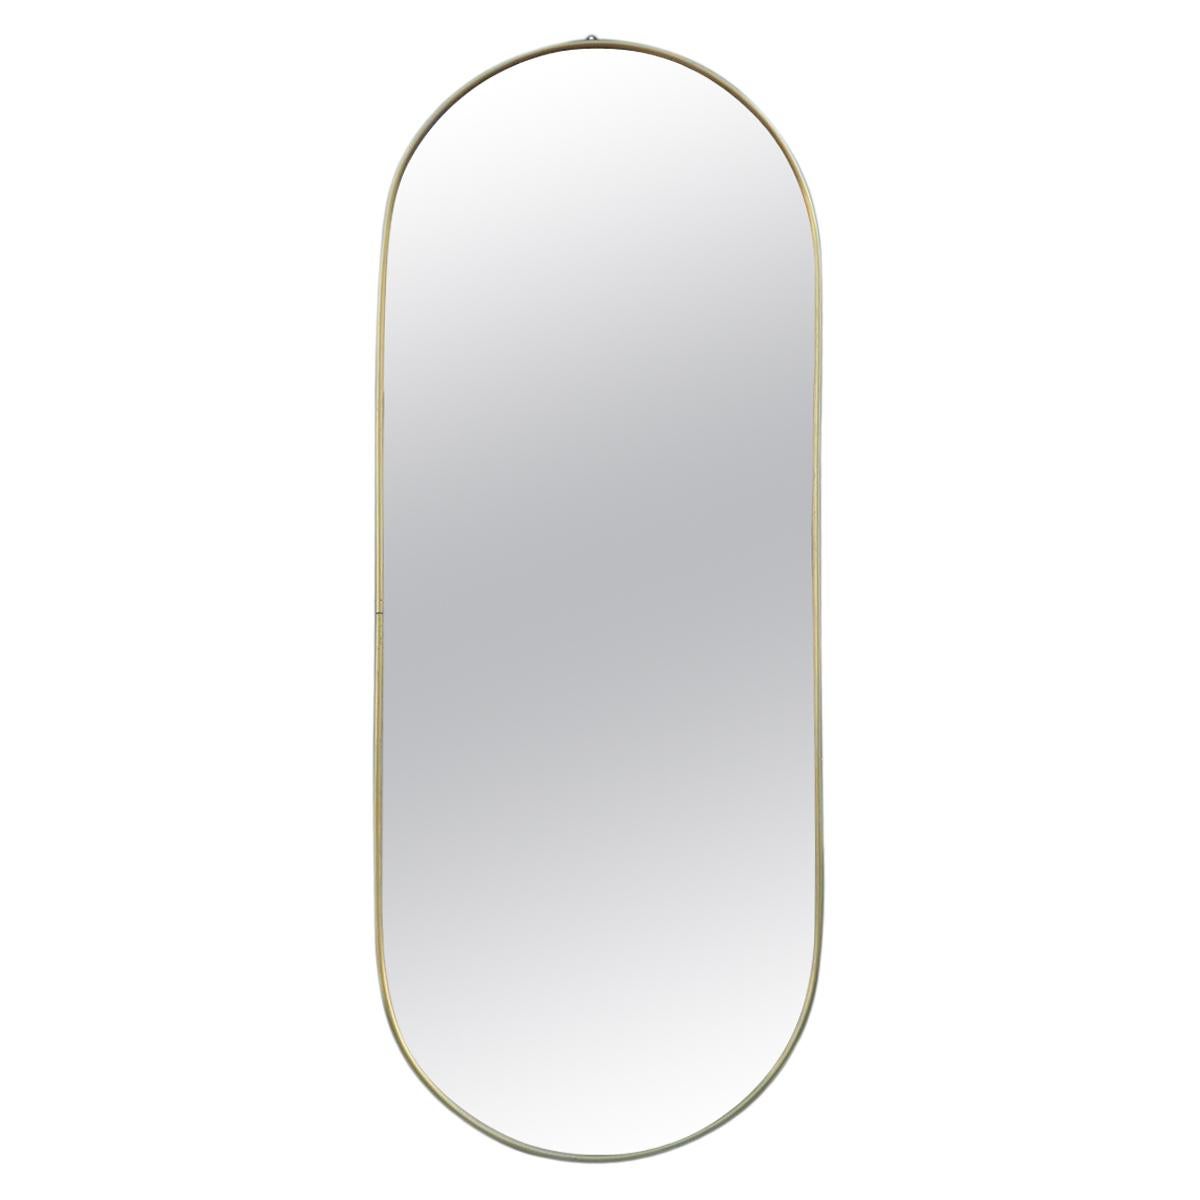 Oval Midcentury Italian Wall Mirror Aluminum Golden 1950s Italian Design